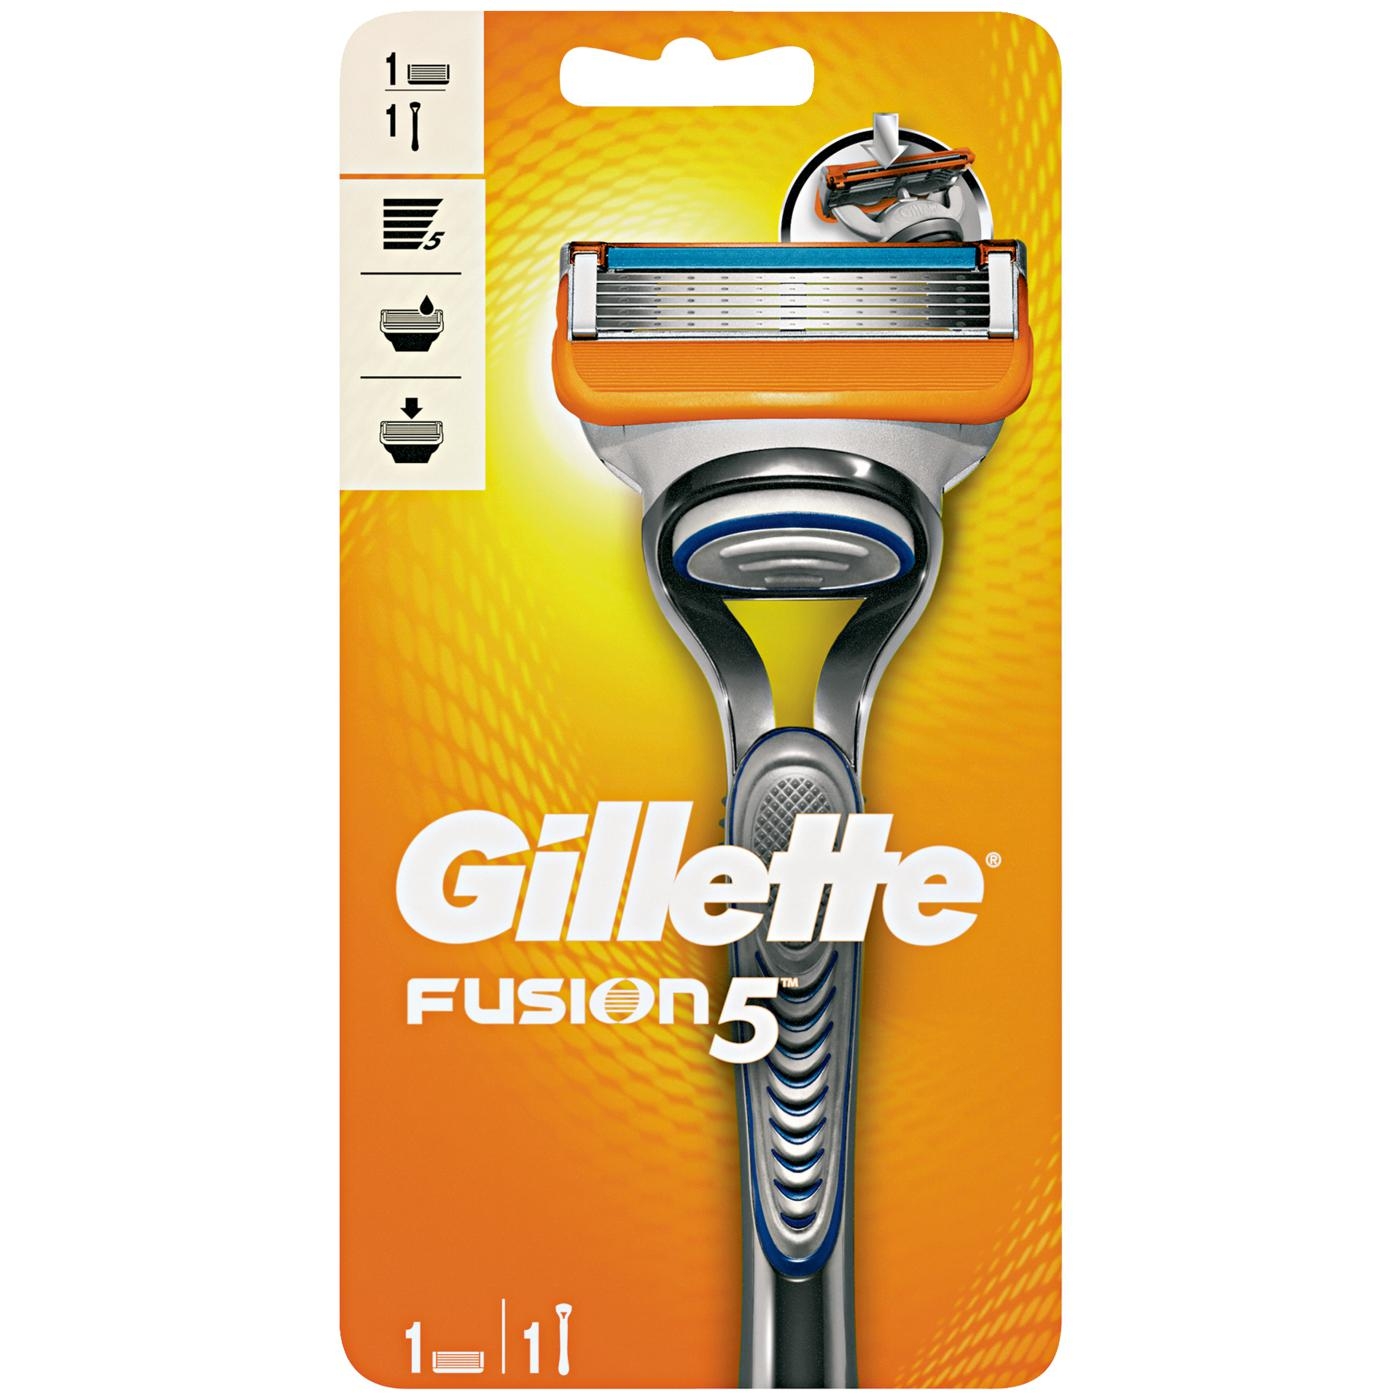 Dagaanbieding - Gillette Fusion5 Apparaat incl 1 mesje dagelijkse koopjes